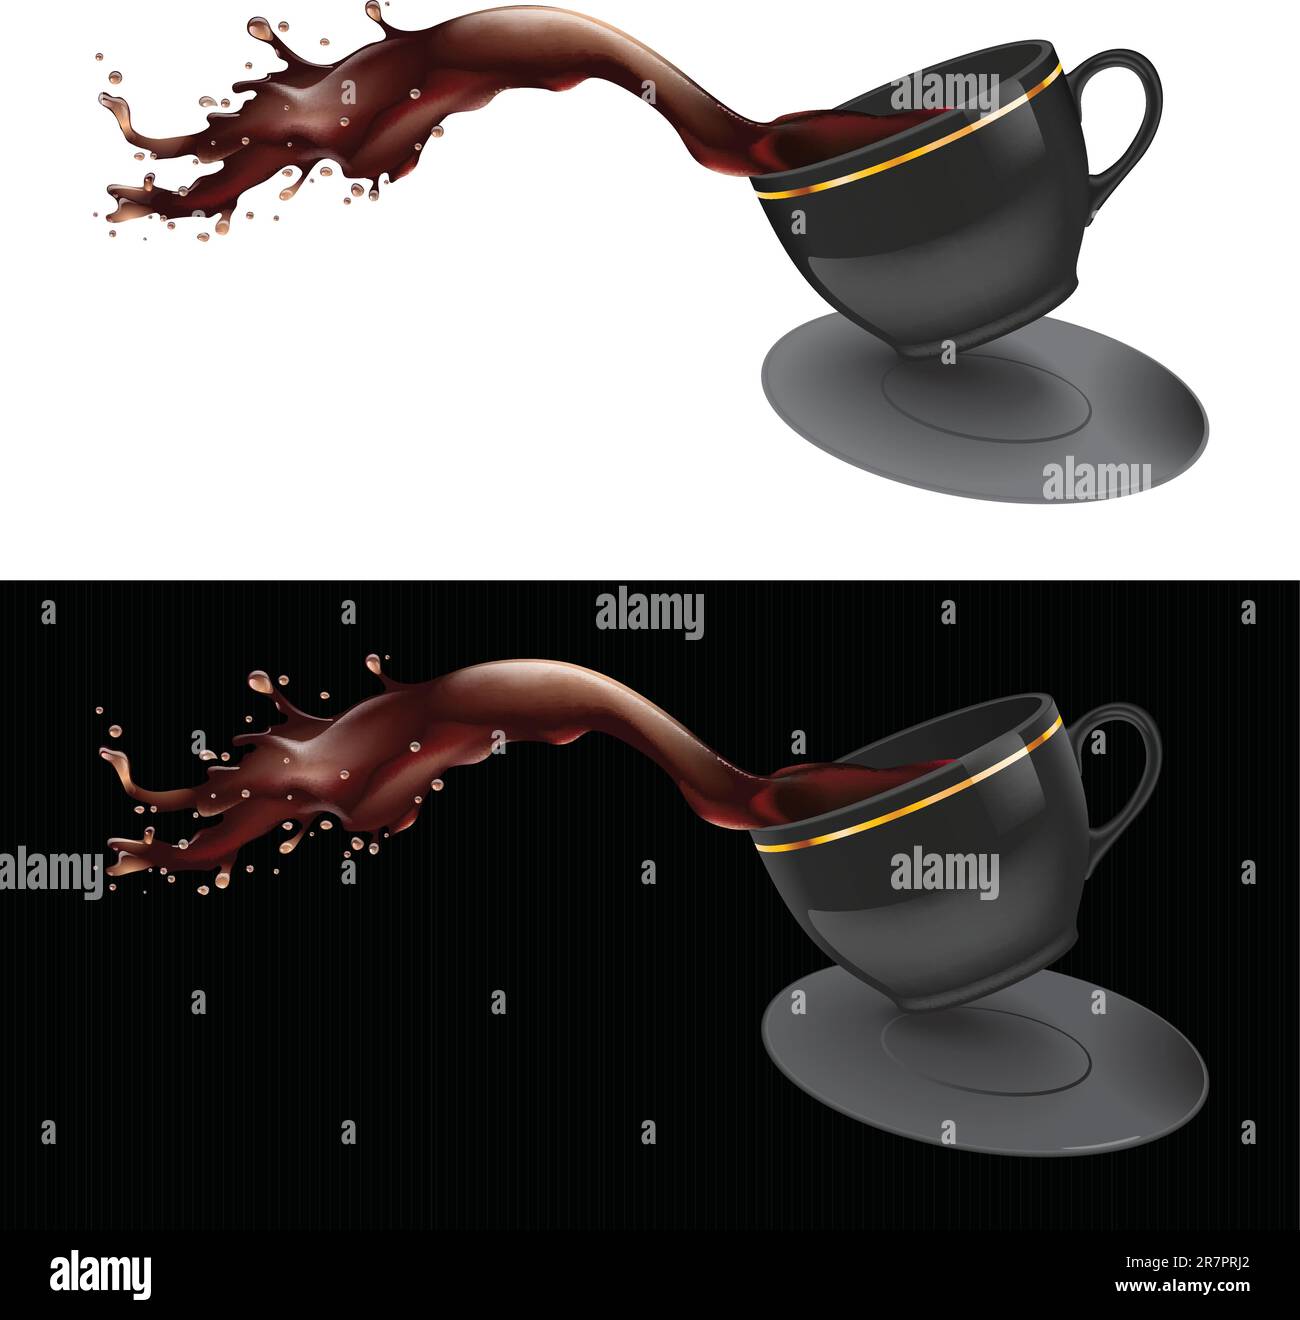 Immagine vettoriale di un caffè che fuoriesce da una tazza. Design nero. Illustrazione Vettoriale